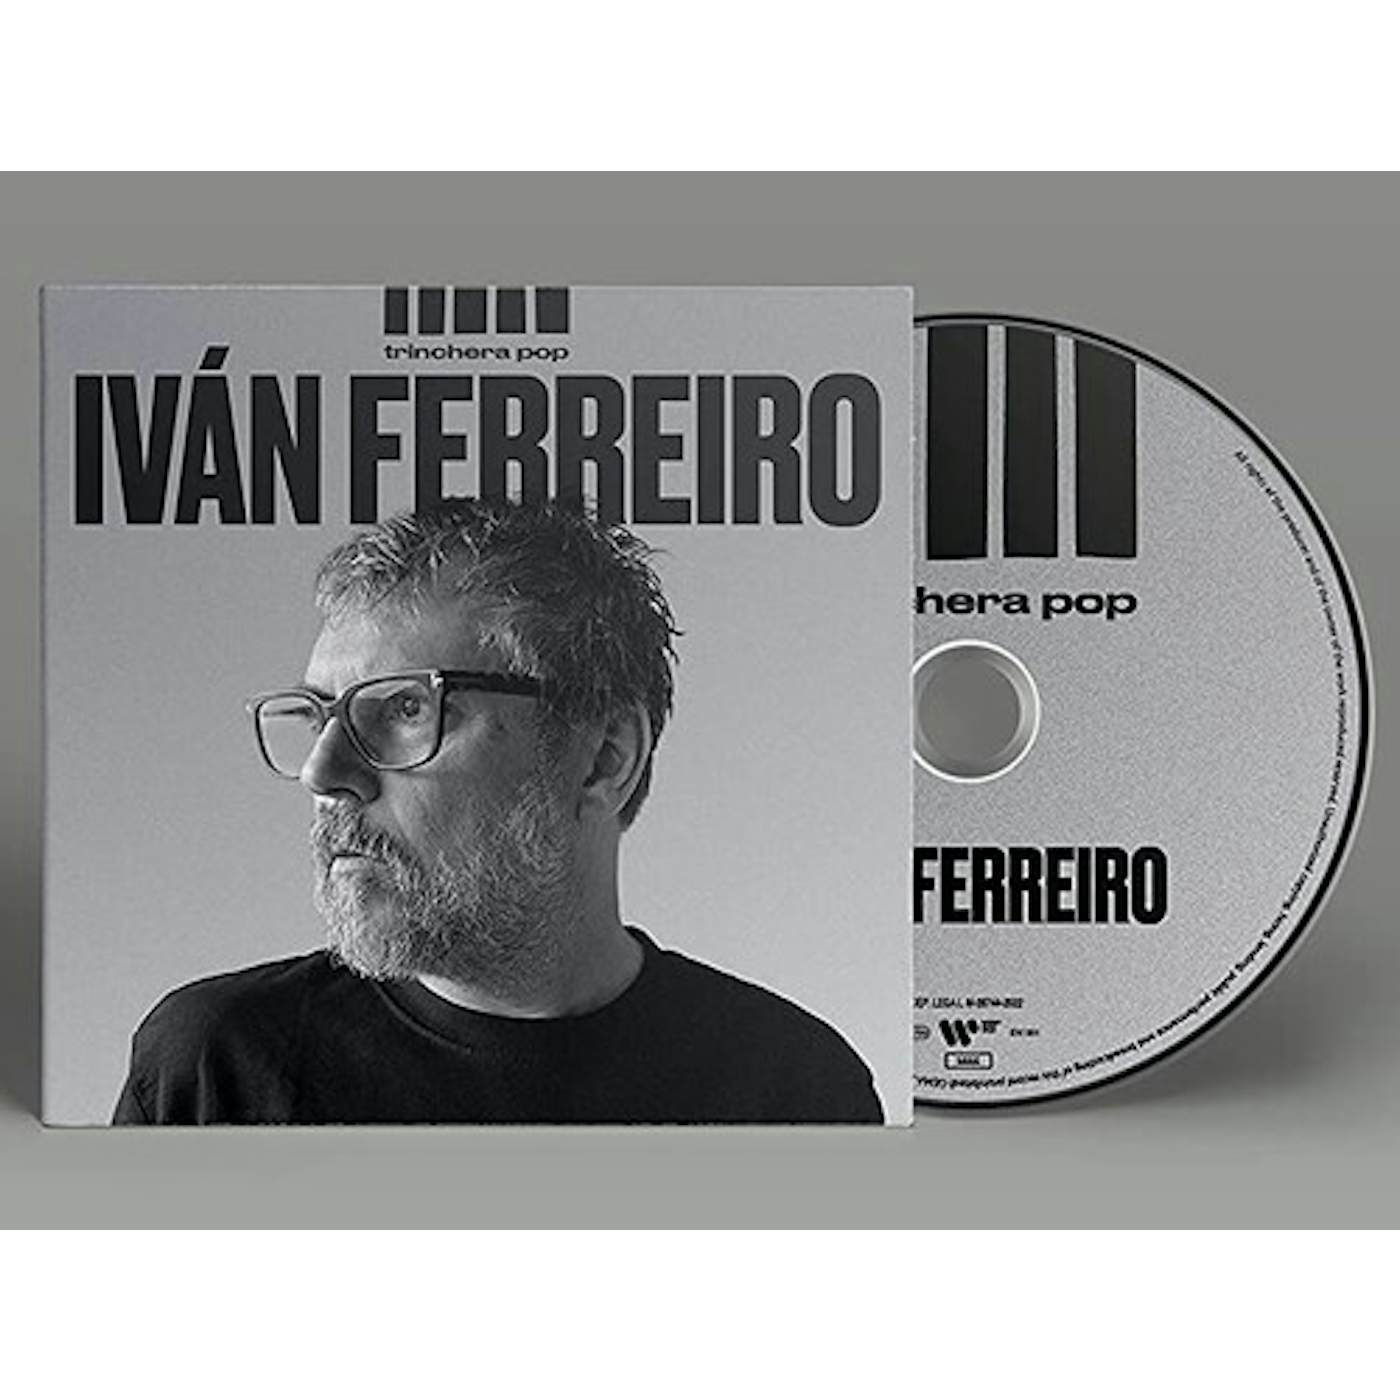 Ivan Ferreiro TRINCHERA POP CD